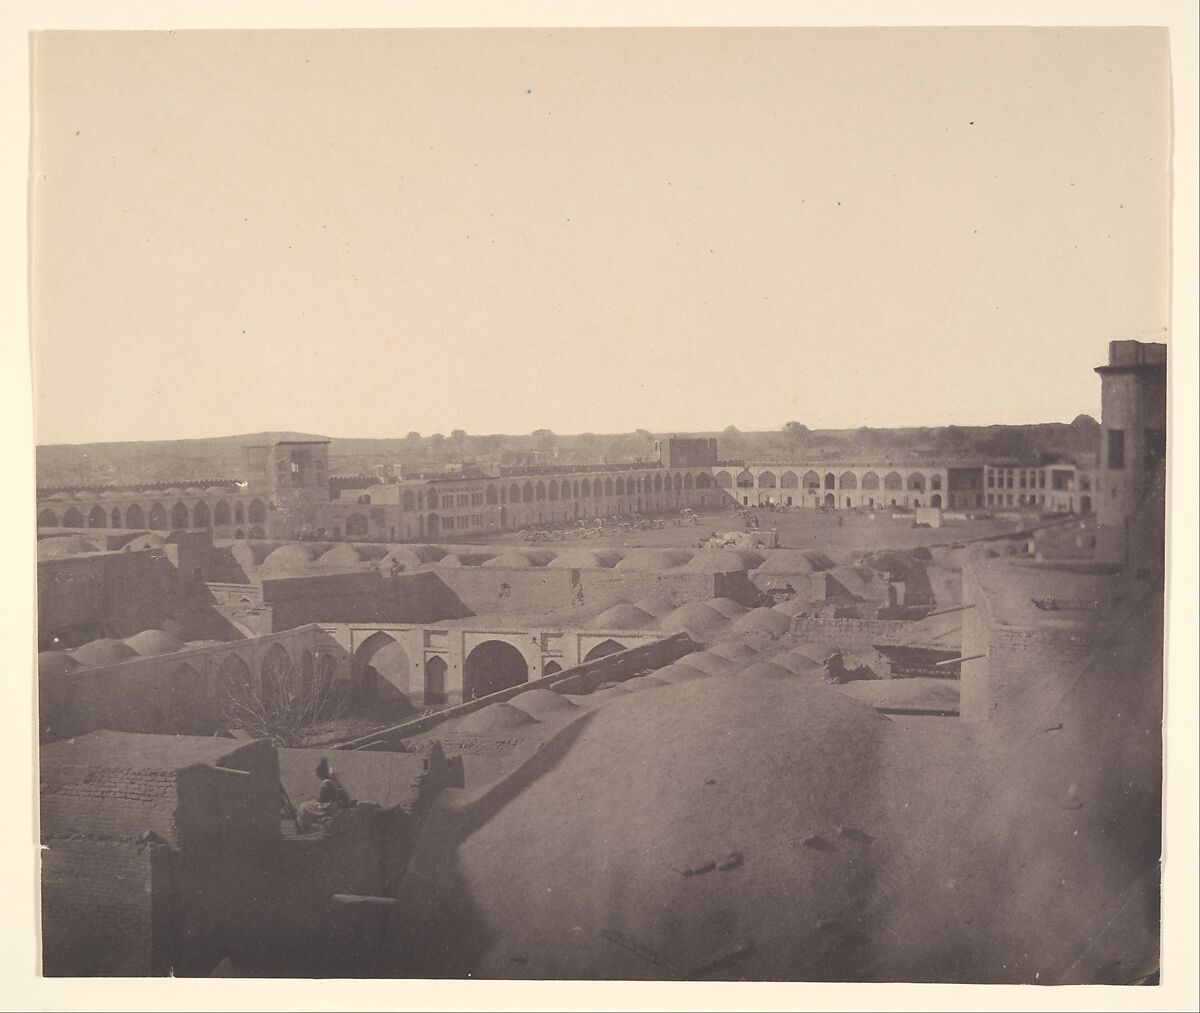 [Plaza of Canons, Teheran, Iran] (Maydan-i Top-khaneh), Possibly by Luigi Pesce (Italian, 1818–1891) 